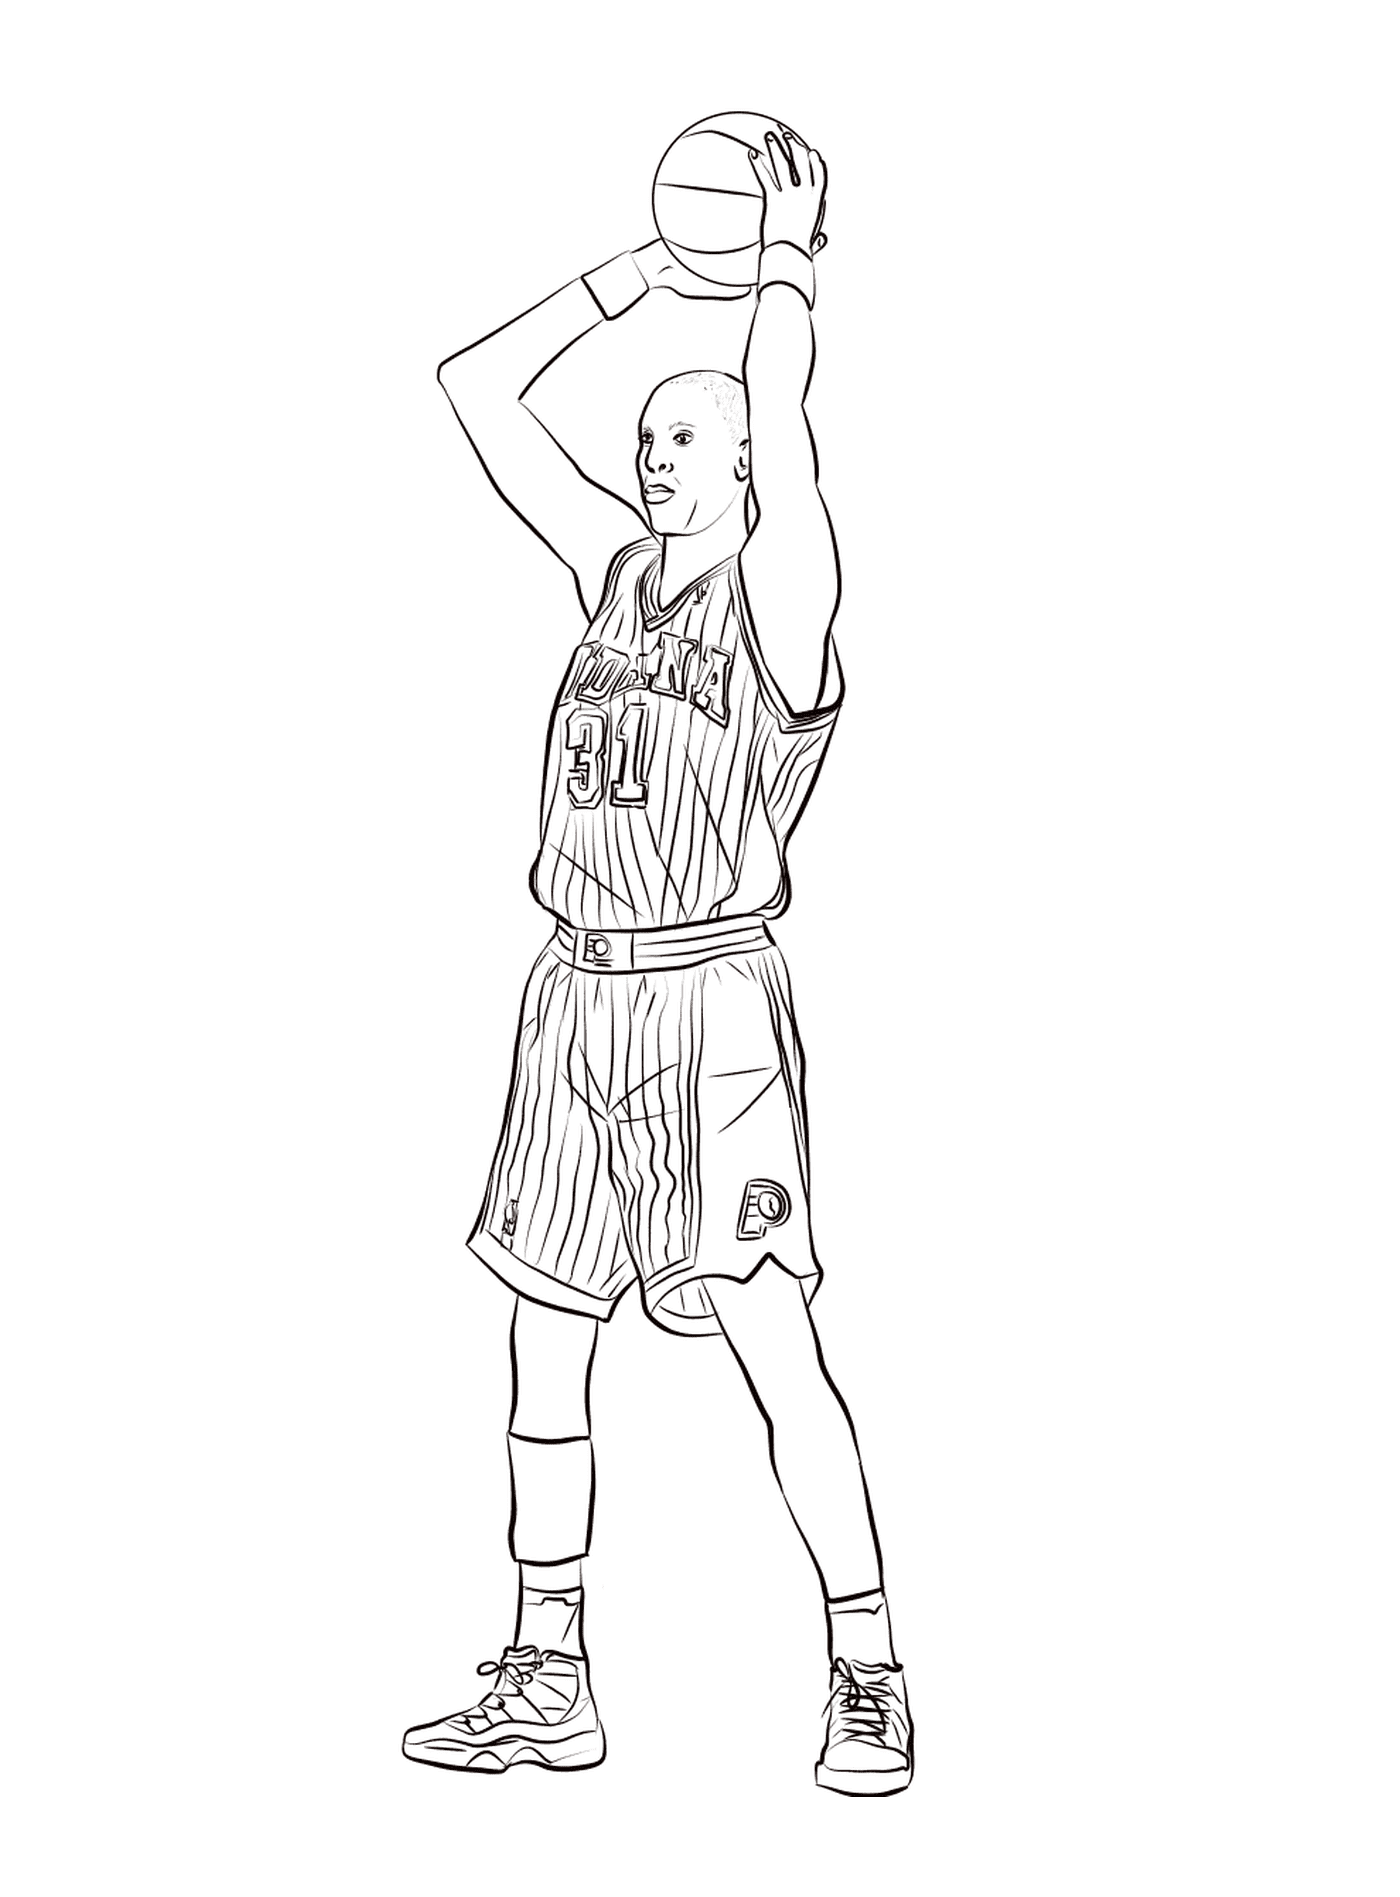  Reggie Miller segura uma bola de basquete 